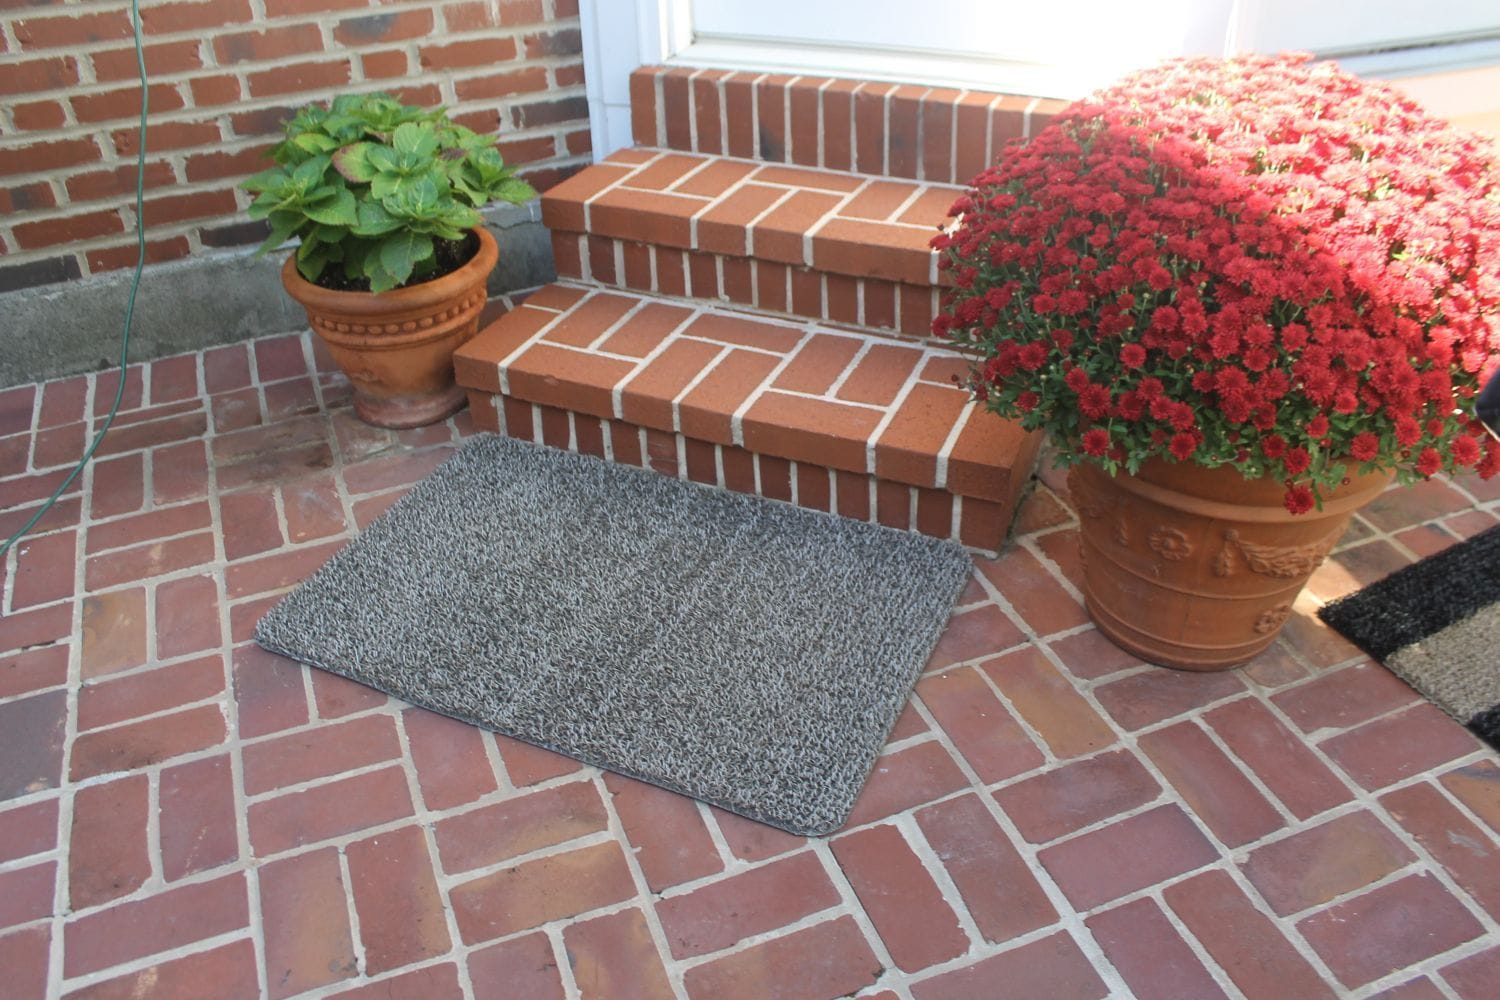 GrassWorx Clean Machine AstroTurf Scraper Doormat, Flair, Evergreen, 24 x  36-In.